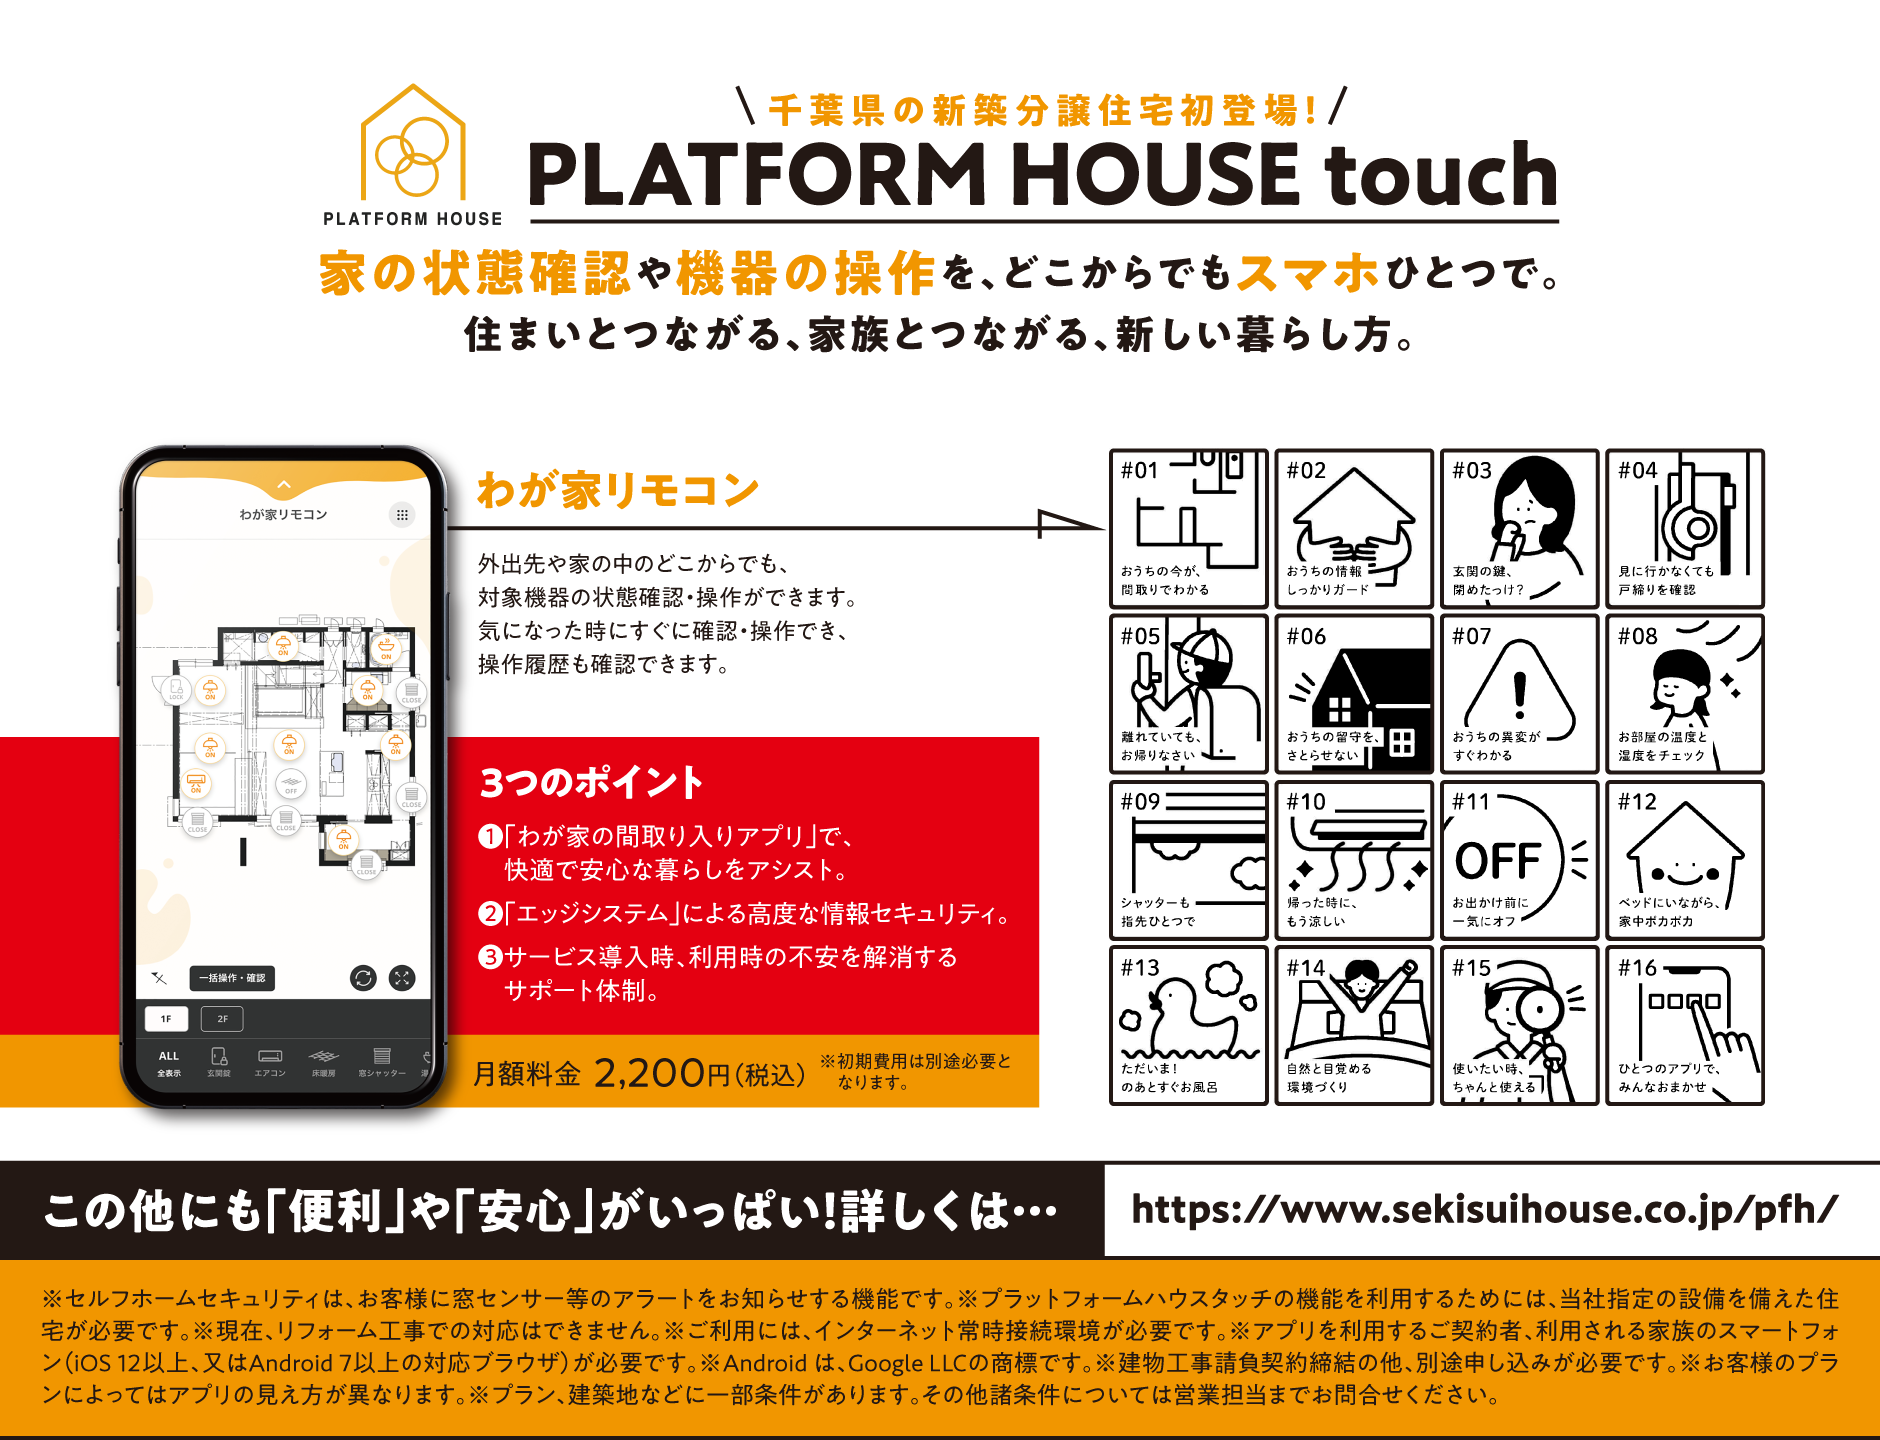 千葉県の新築分譲住宅初登場！プラットホームハウスタッチ。家の状態確認や機器の操作を、どこからでもスマホひとつで。住まいとつながる、家族とつながる、新しい暮らし方。